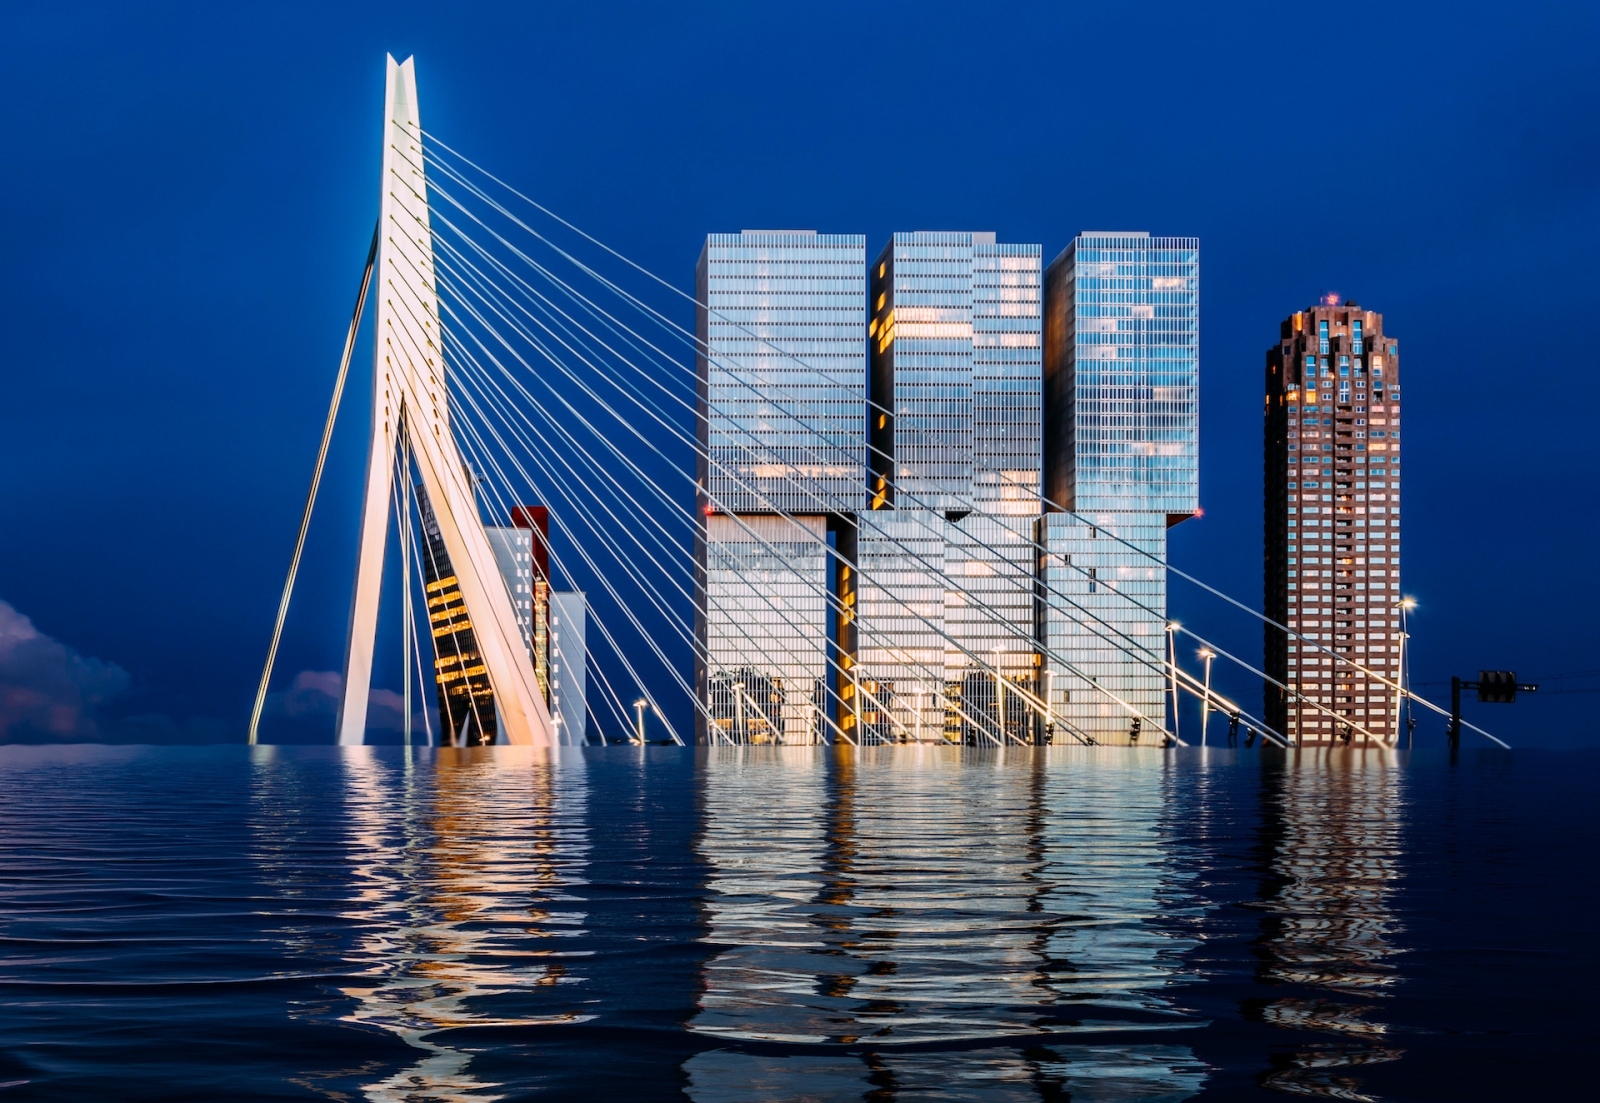 Rotterdam inundada, concepto de cambio climático de manipulación digital de los Países Bajos